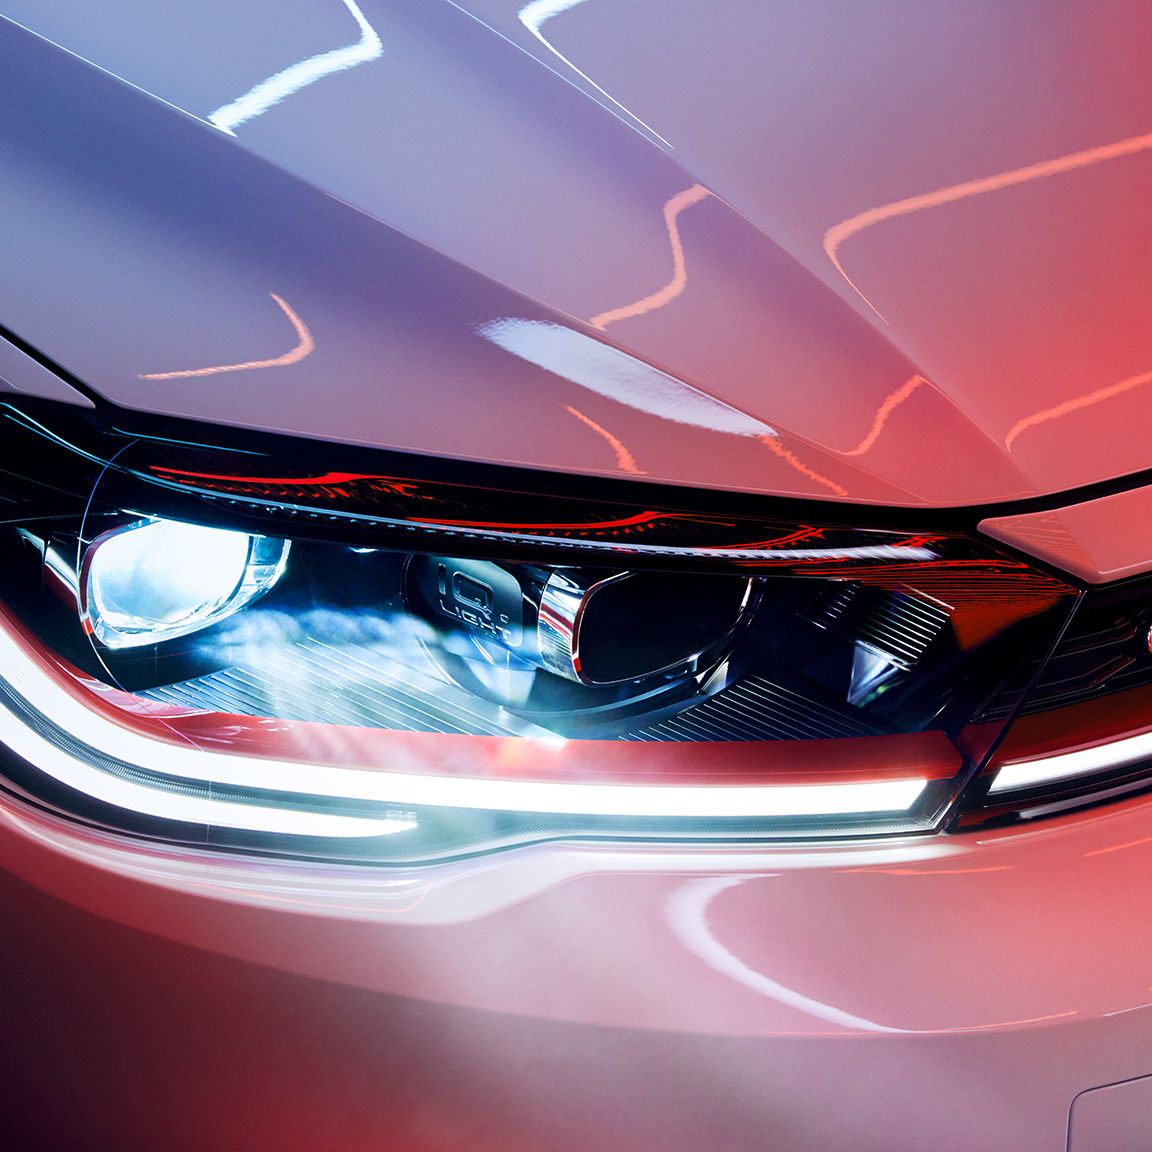 Detailaufnahme der LED-Matrix-Scheinwerfer in der Front eines VW Polo GTI in Weiß, roter Zierstreifen und GTI-Badge erkennbar.